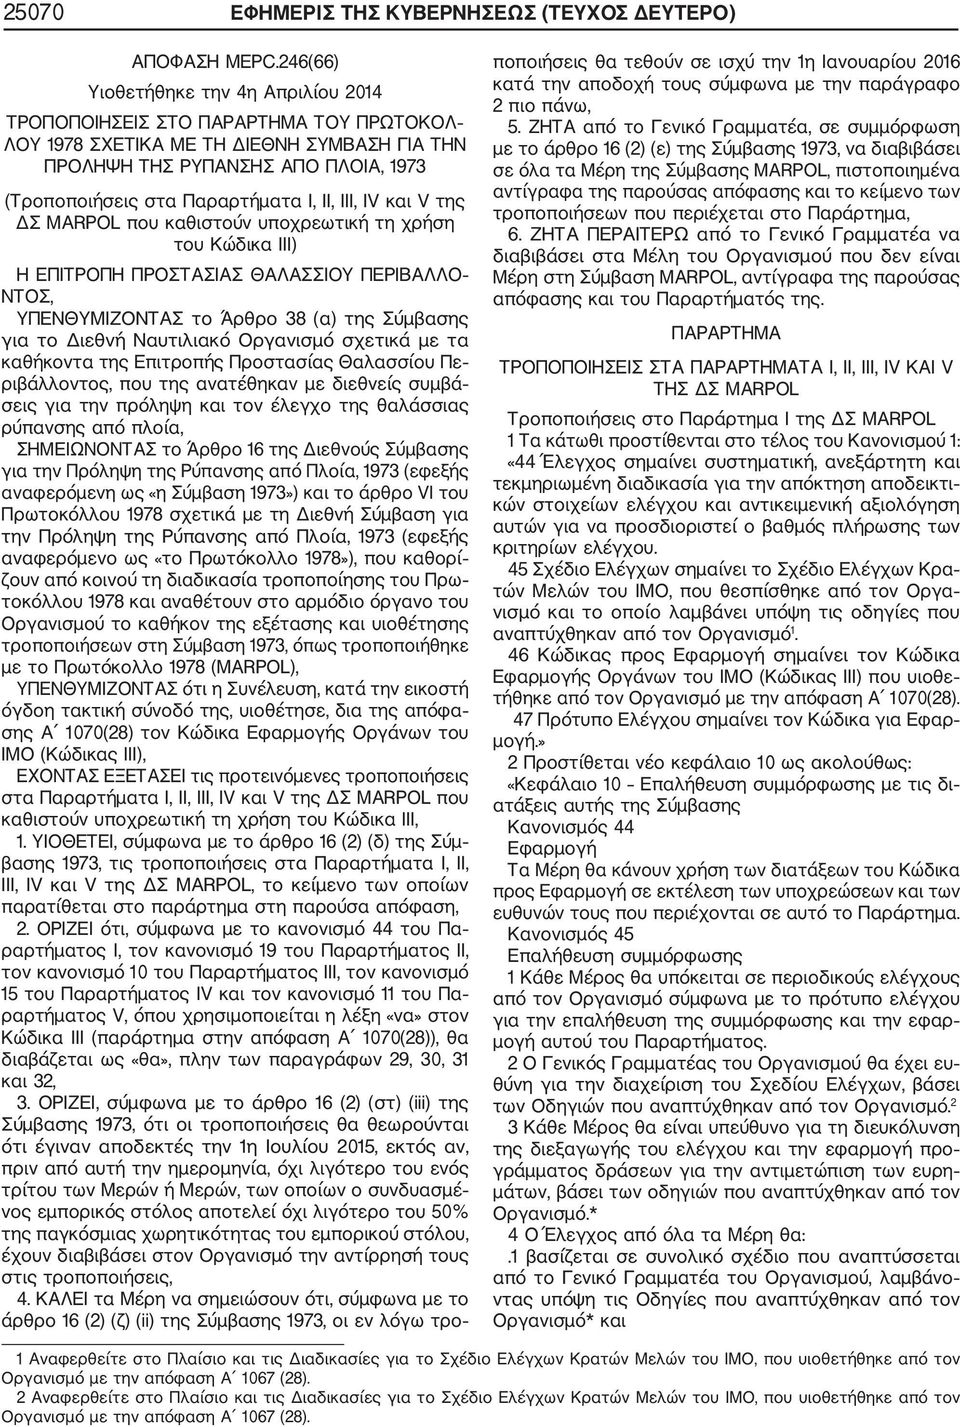 II, III, IV και V της ΔΣ MARPOL που καθιστούν υποχρεωτική τη χρήση του Κώδικα III) Η ΕΠΙΤΡΟΠΗ ΠΡΟΣΤΑΣΙΑΣ ΘΑΛΑΣΣΙΟΥ ΠΕΡΙΒΑΛΛΟ ΝΤΟΣ, ΥΠΕΝΘΥΜΙΖOΝΤΑΣ το Άρθρο 38 (α) της Σύμβασης για το Διεθνή Ναυτιλιακό